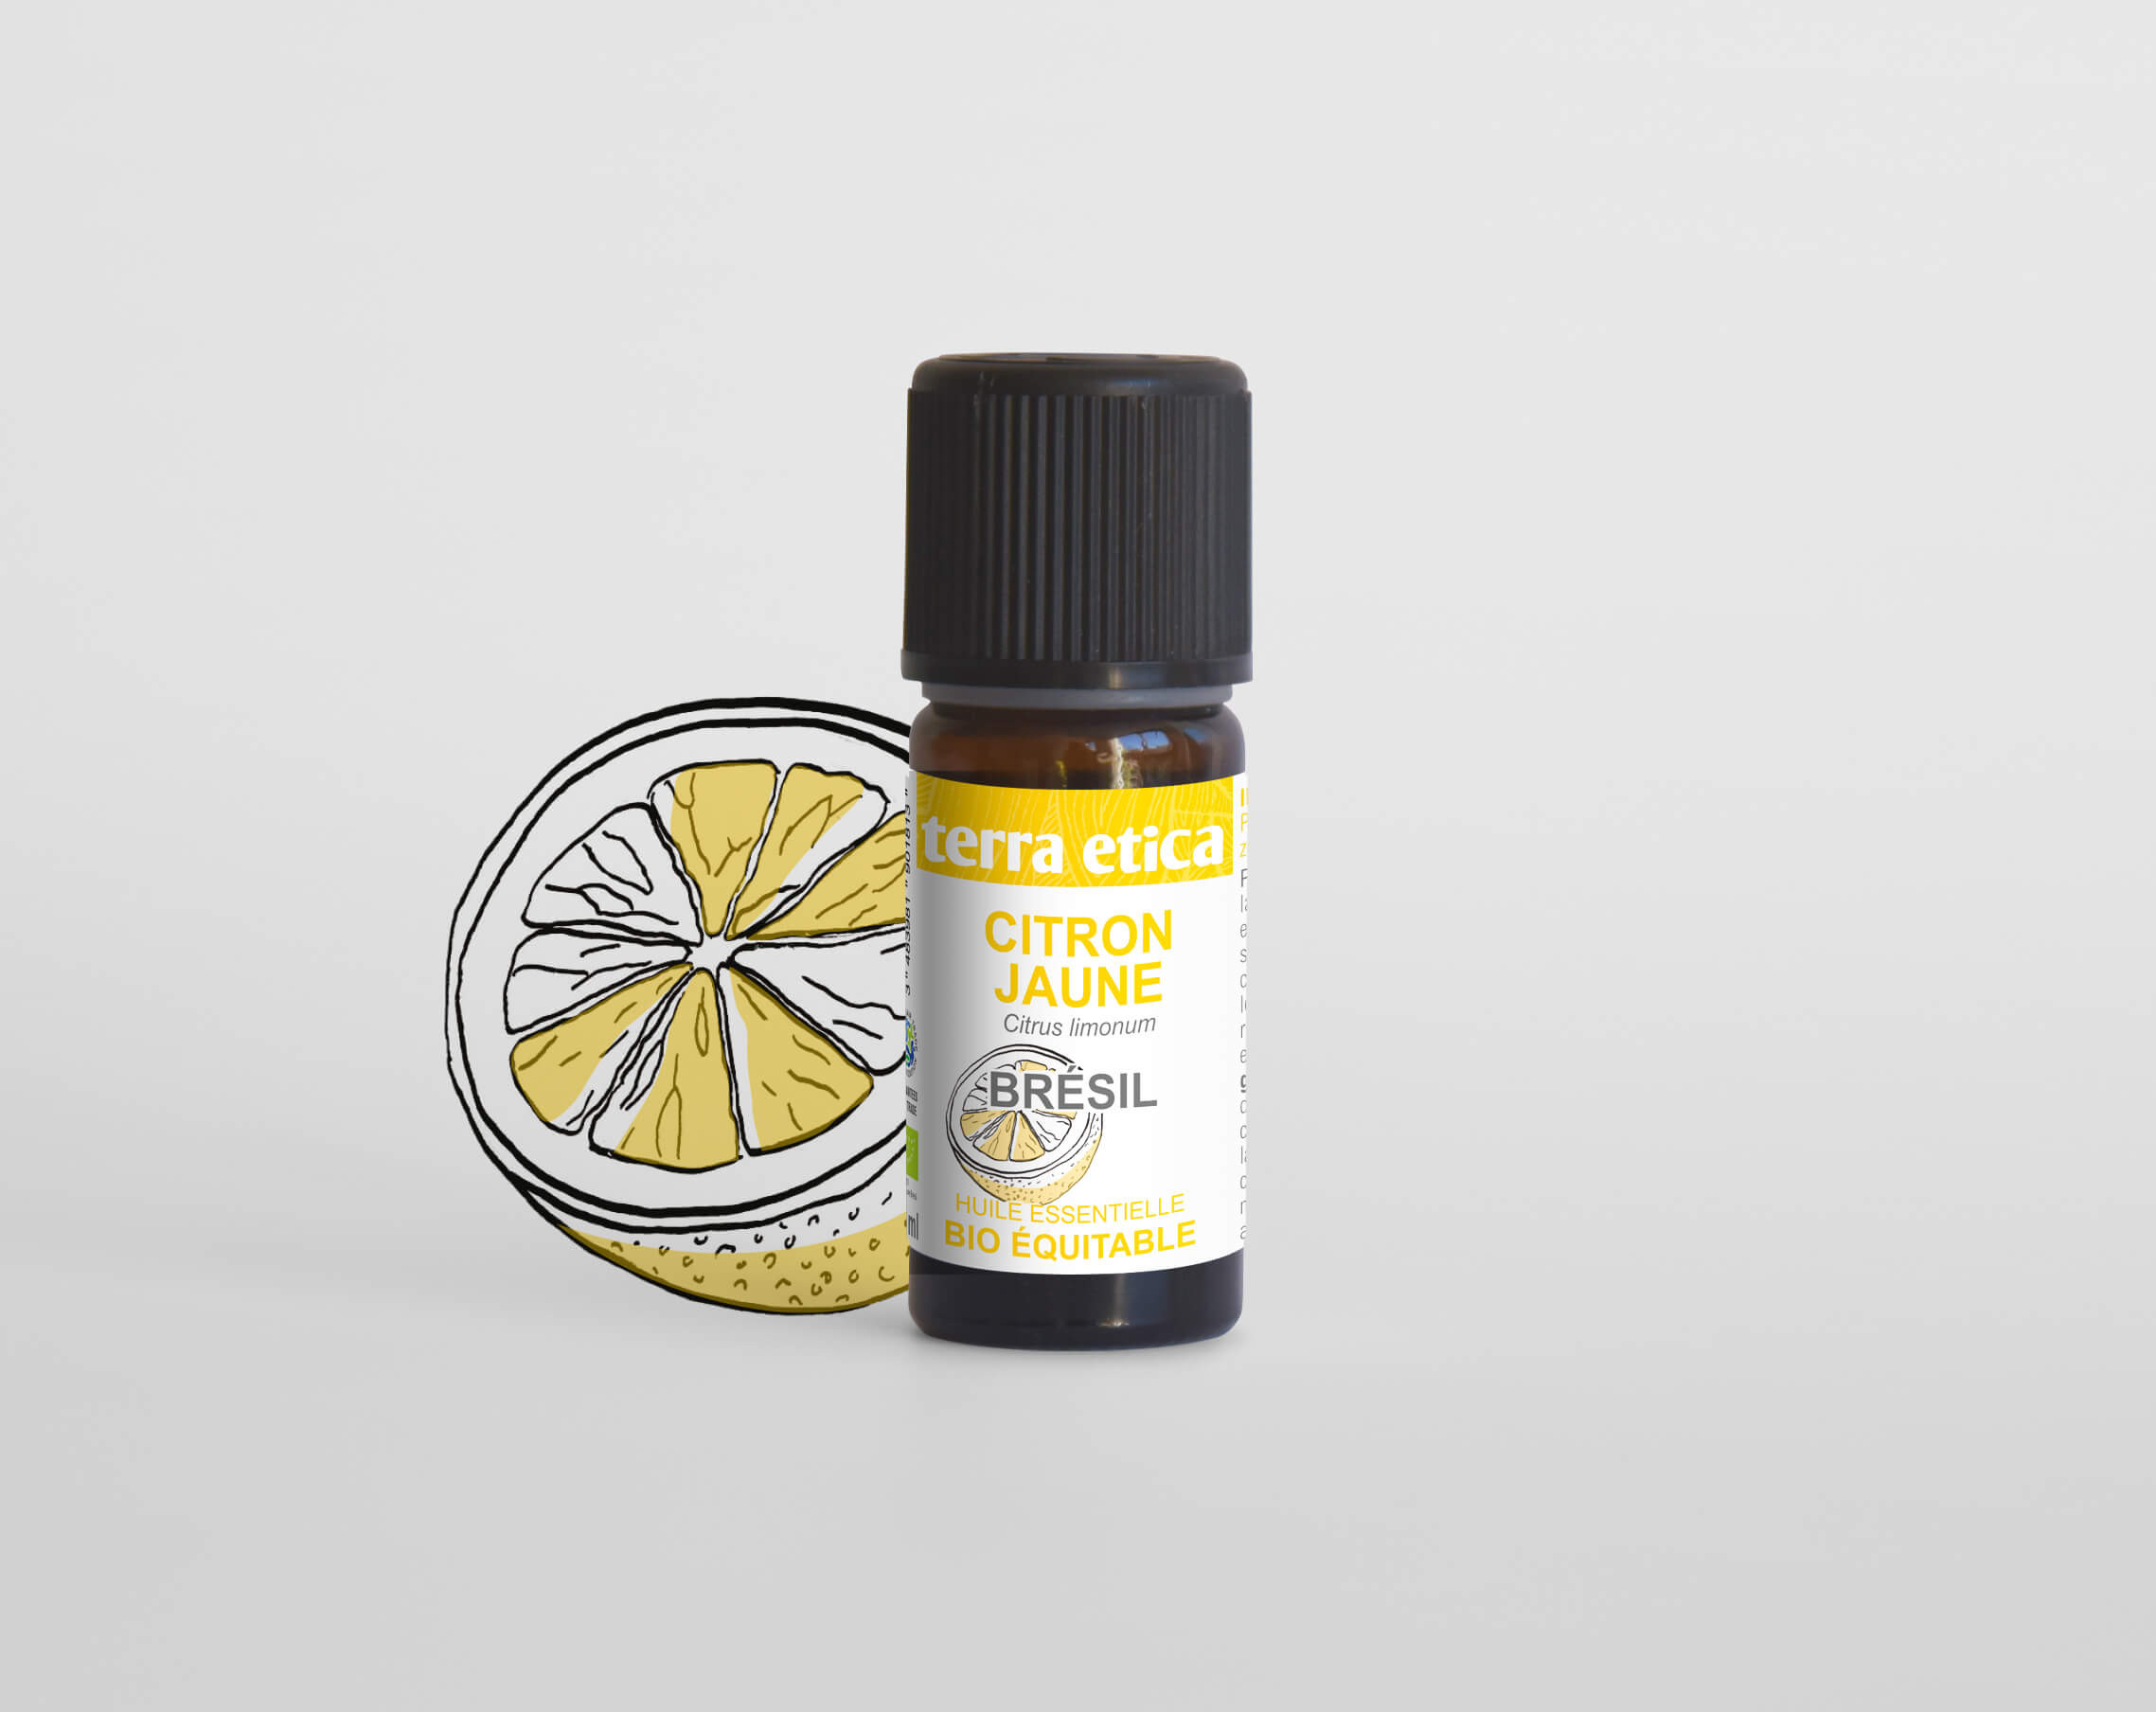 Terra Etica - Pure huile essentielle Citron jaune du Brésil biologique et équitable